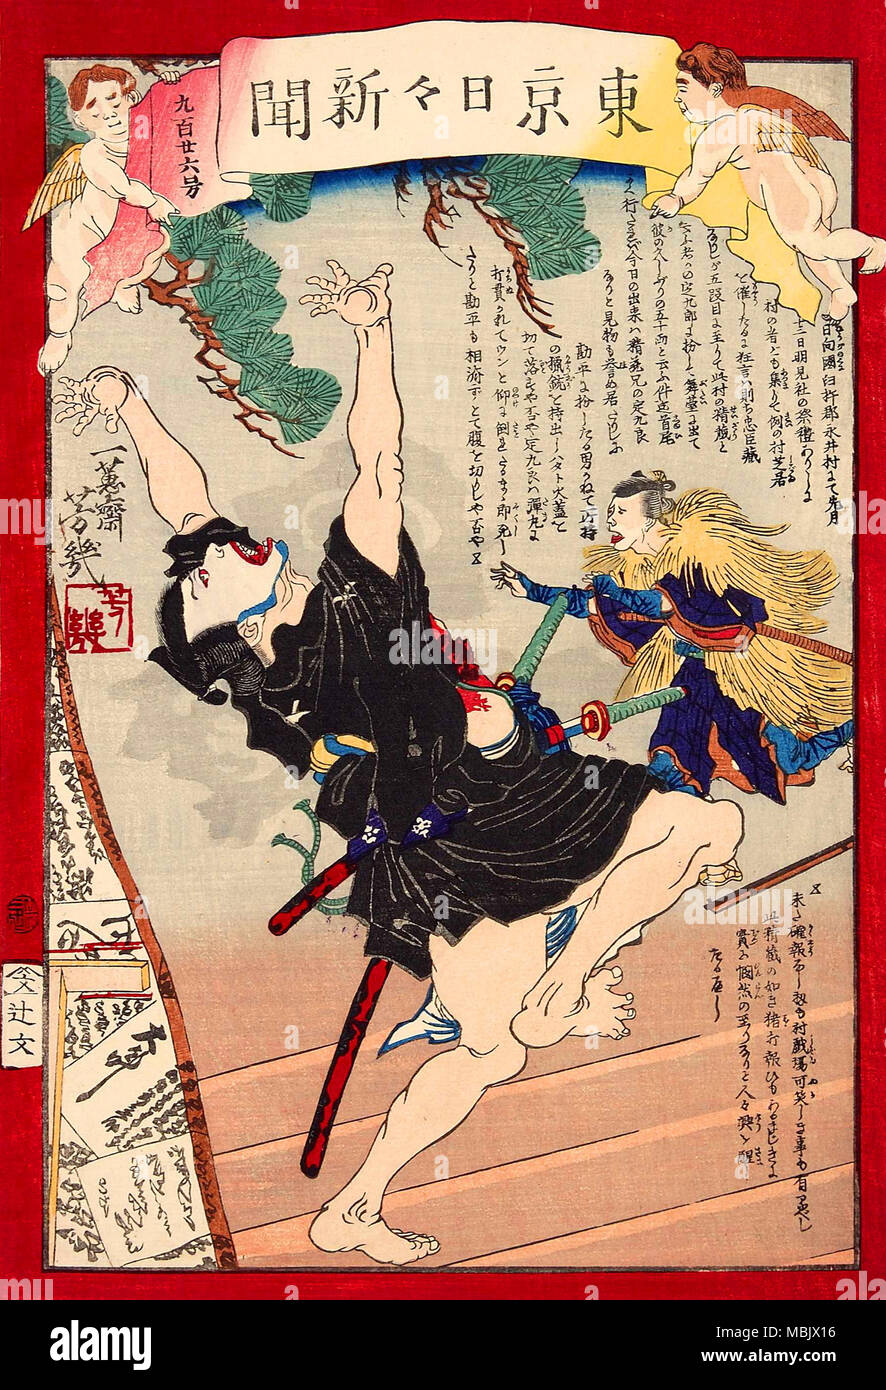 Kanpei tirer un acteur dans un rouleau de samouraïs Sadakuro avec carabine Banque D'Images